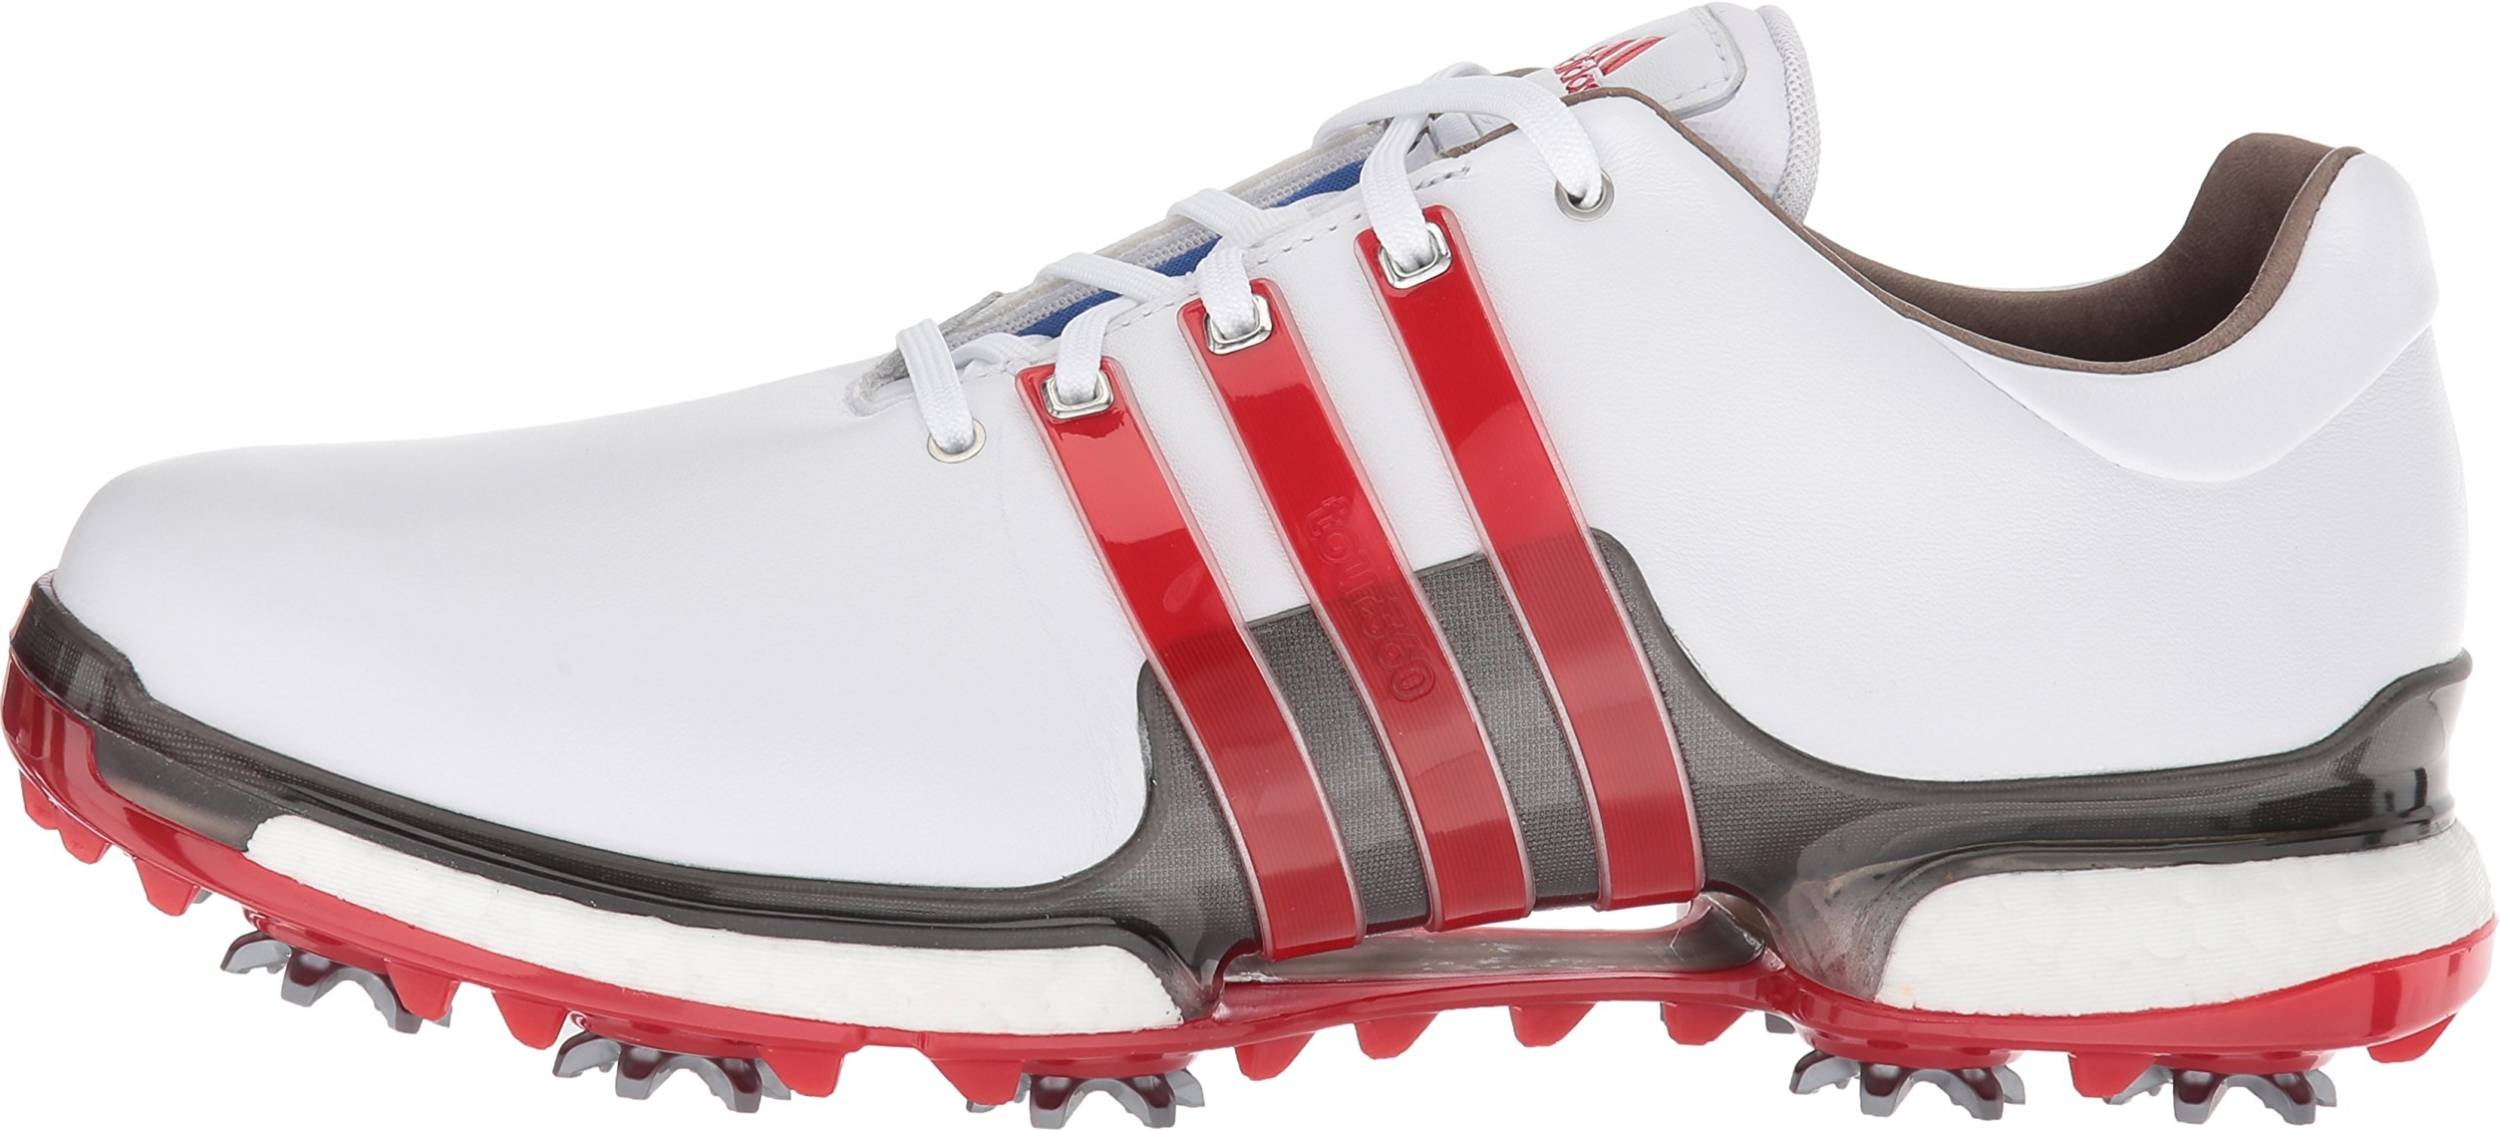 adidas men's tour360 boost 2.0 golf shoes